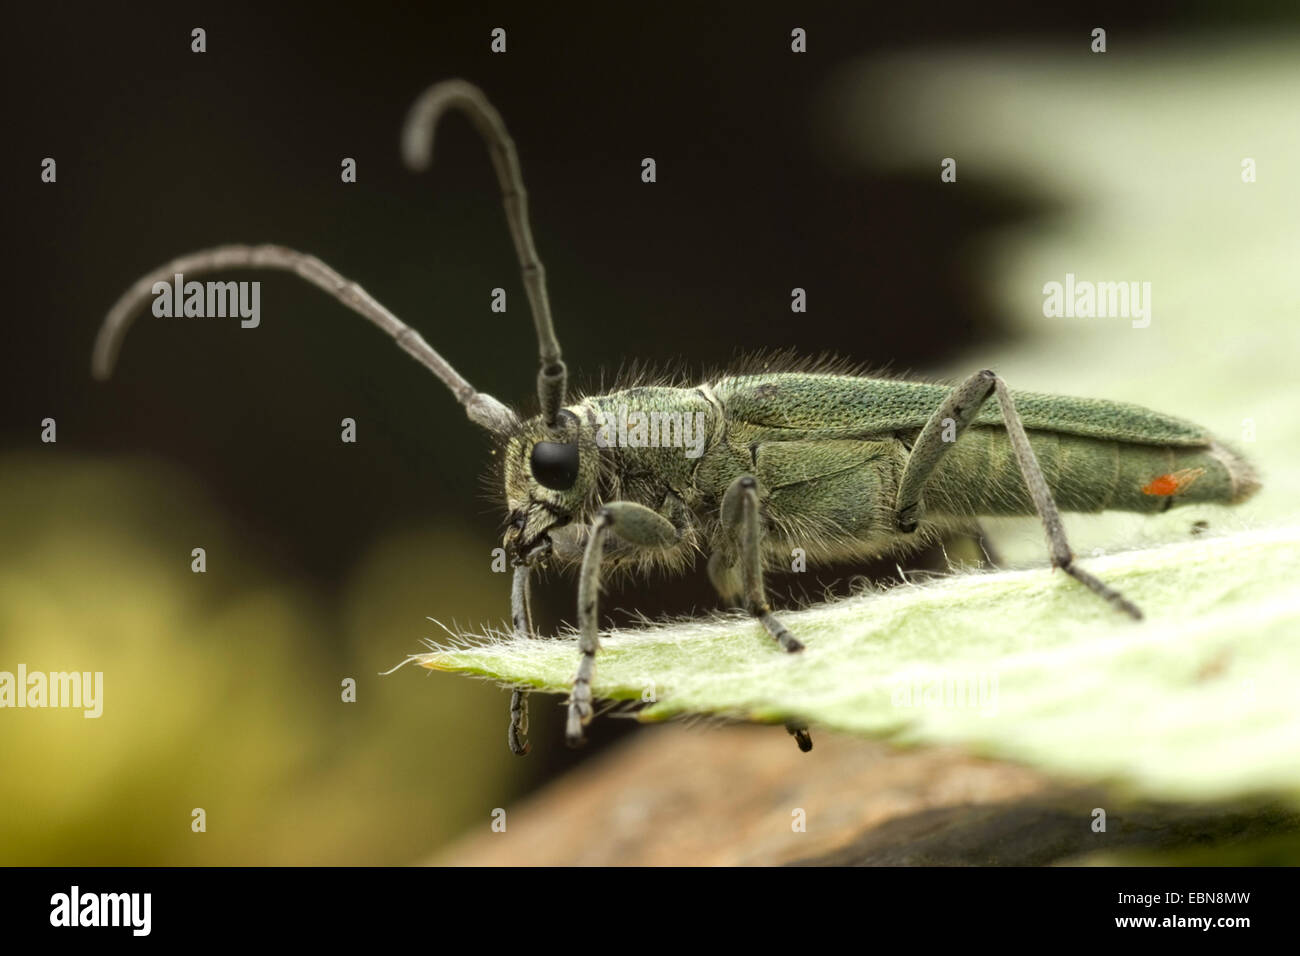 Paterson della maledizione stelo beetle, Longicorn Beetle (Phytoecia coerulescens), vista laterale, Germania, Hesse Foto Stock